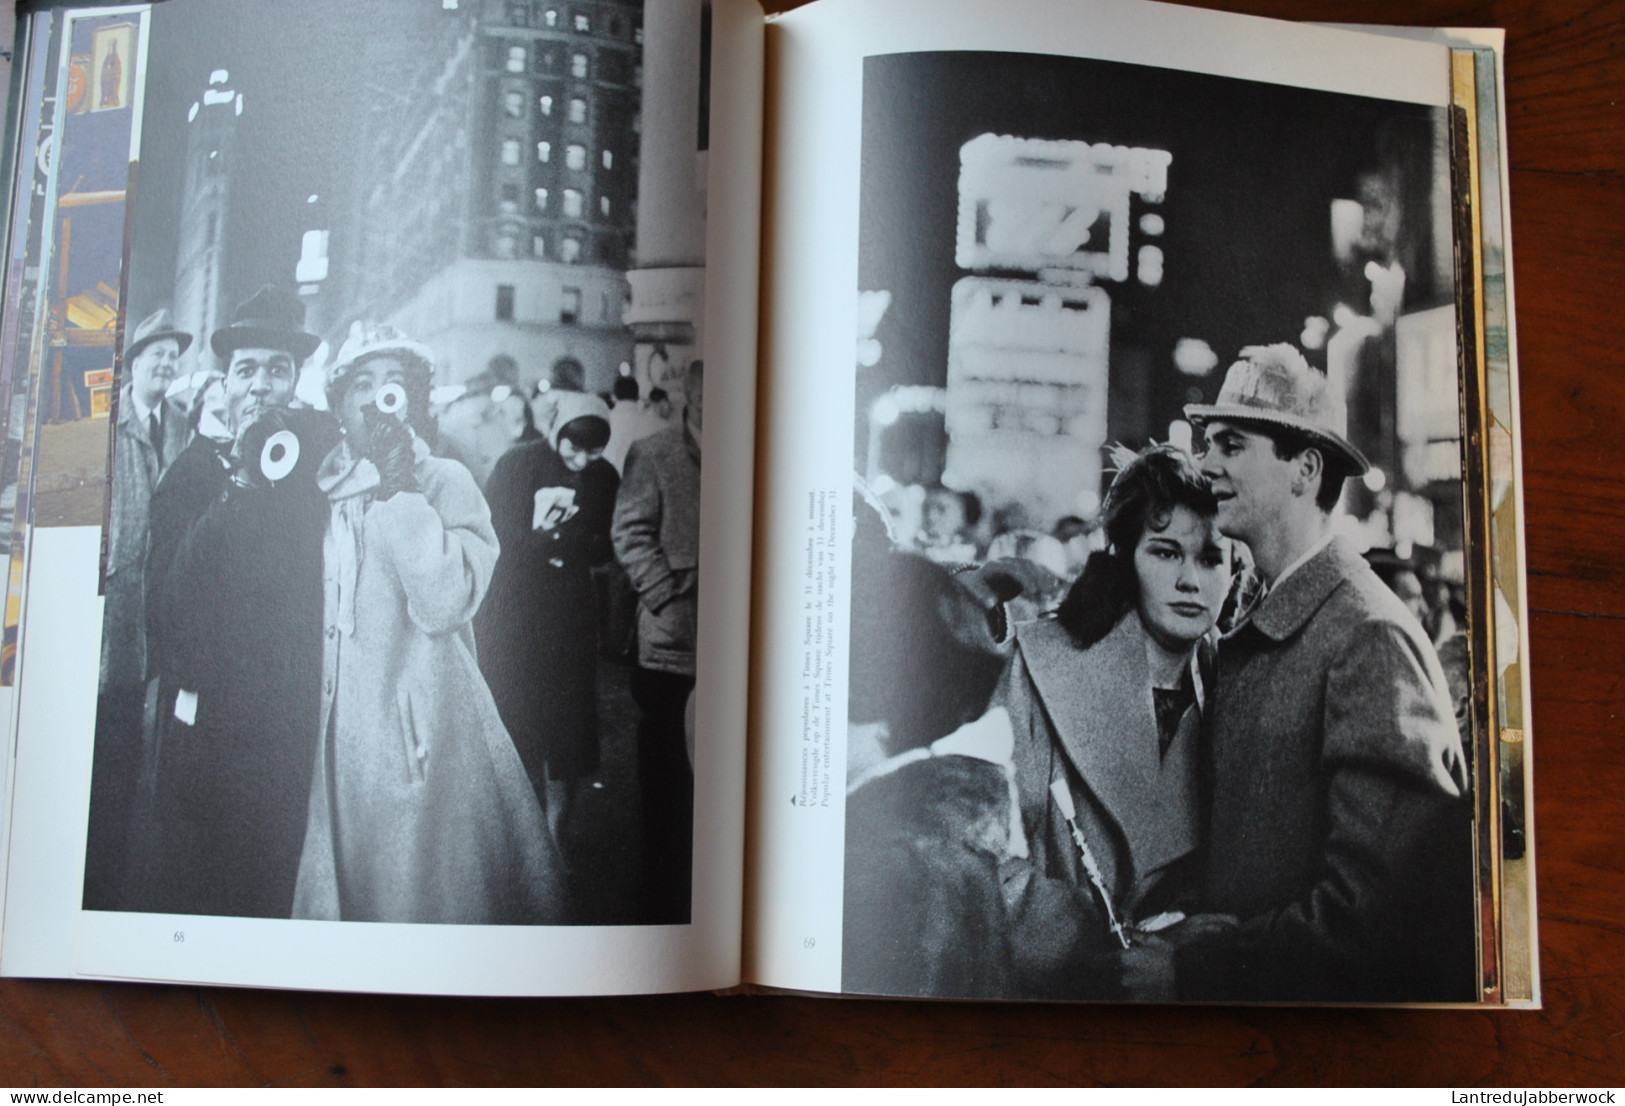 Sabena revue 2 1959 New-York Etats-unis les Quadri-réacteurs photographie contribution photographique de Cartier-Bresson